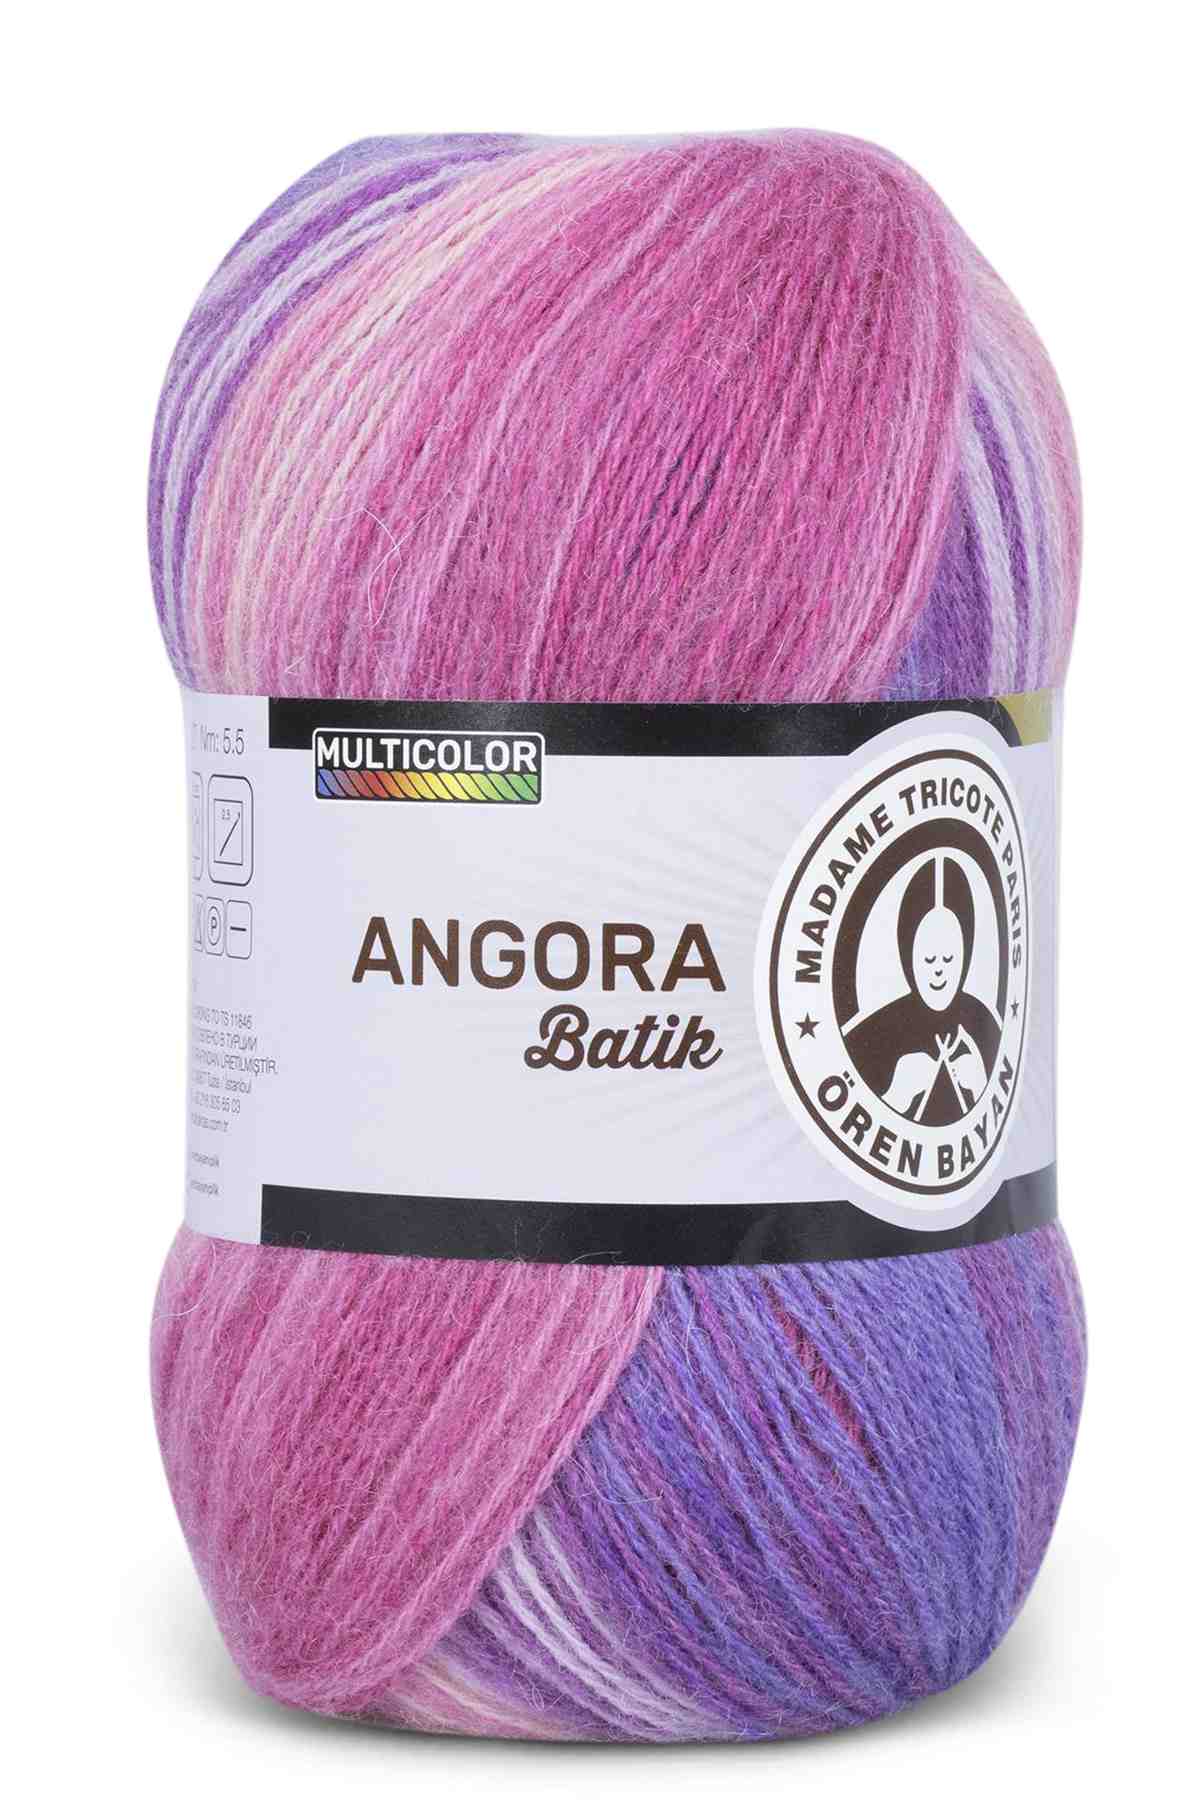 Madame Tricote Paris Angora Multicolor Wool Yarn